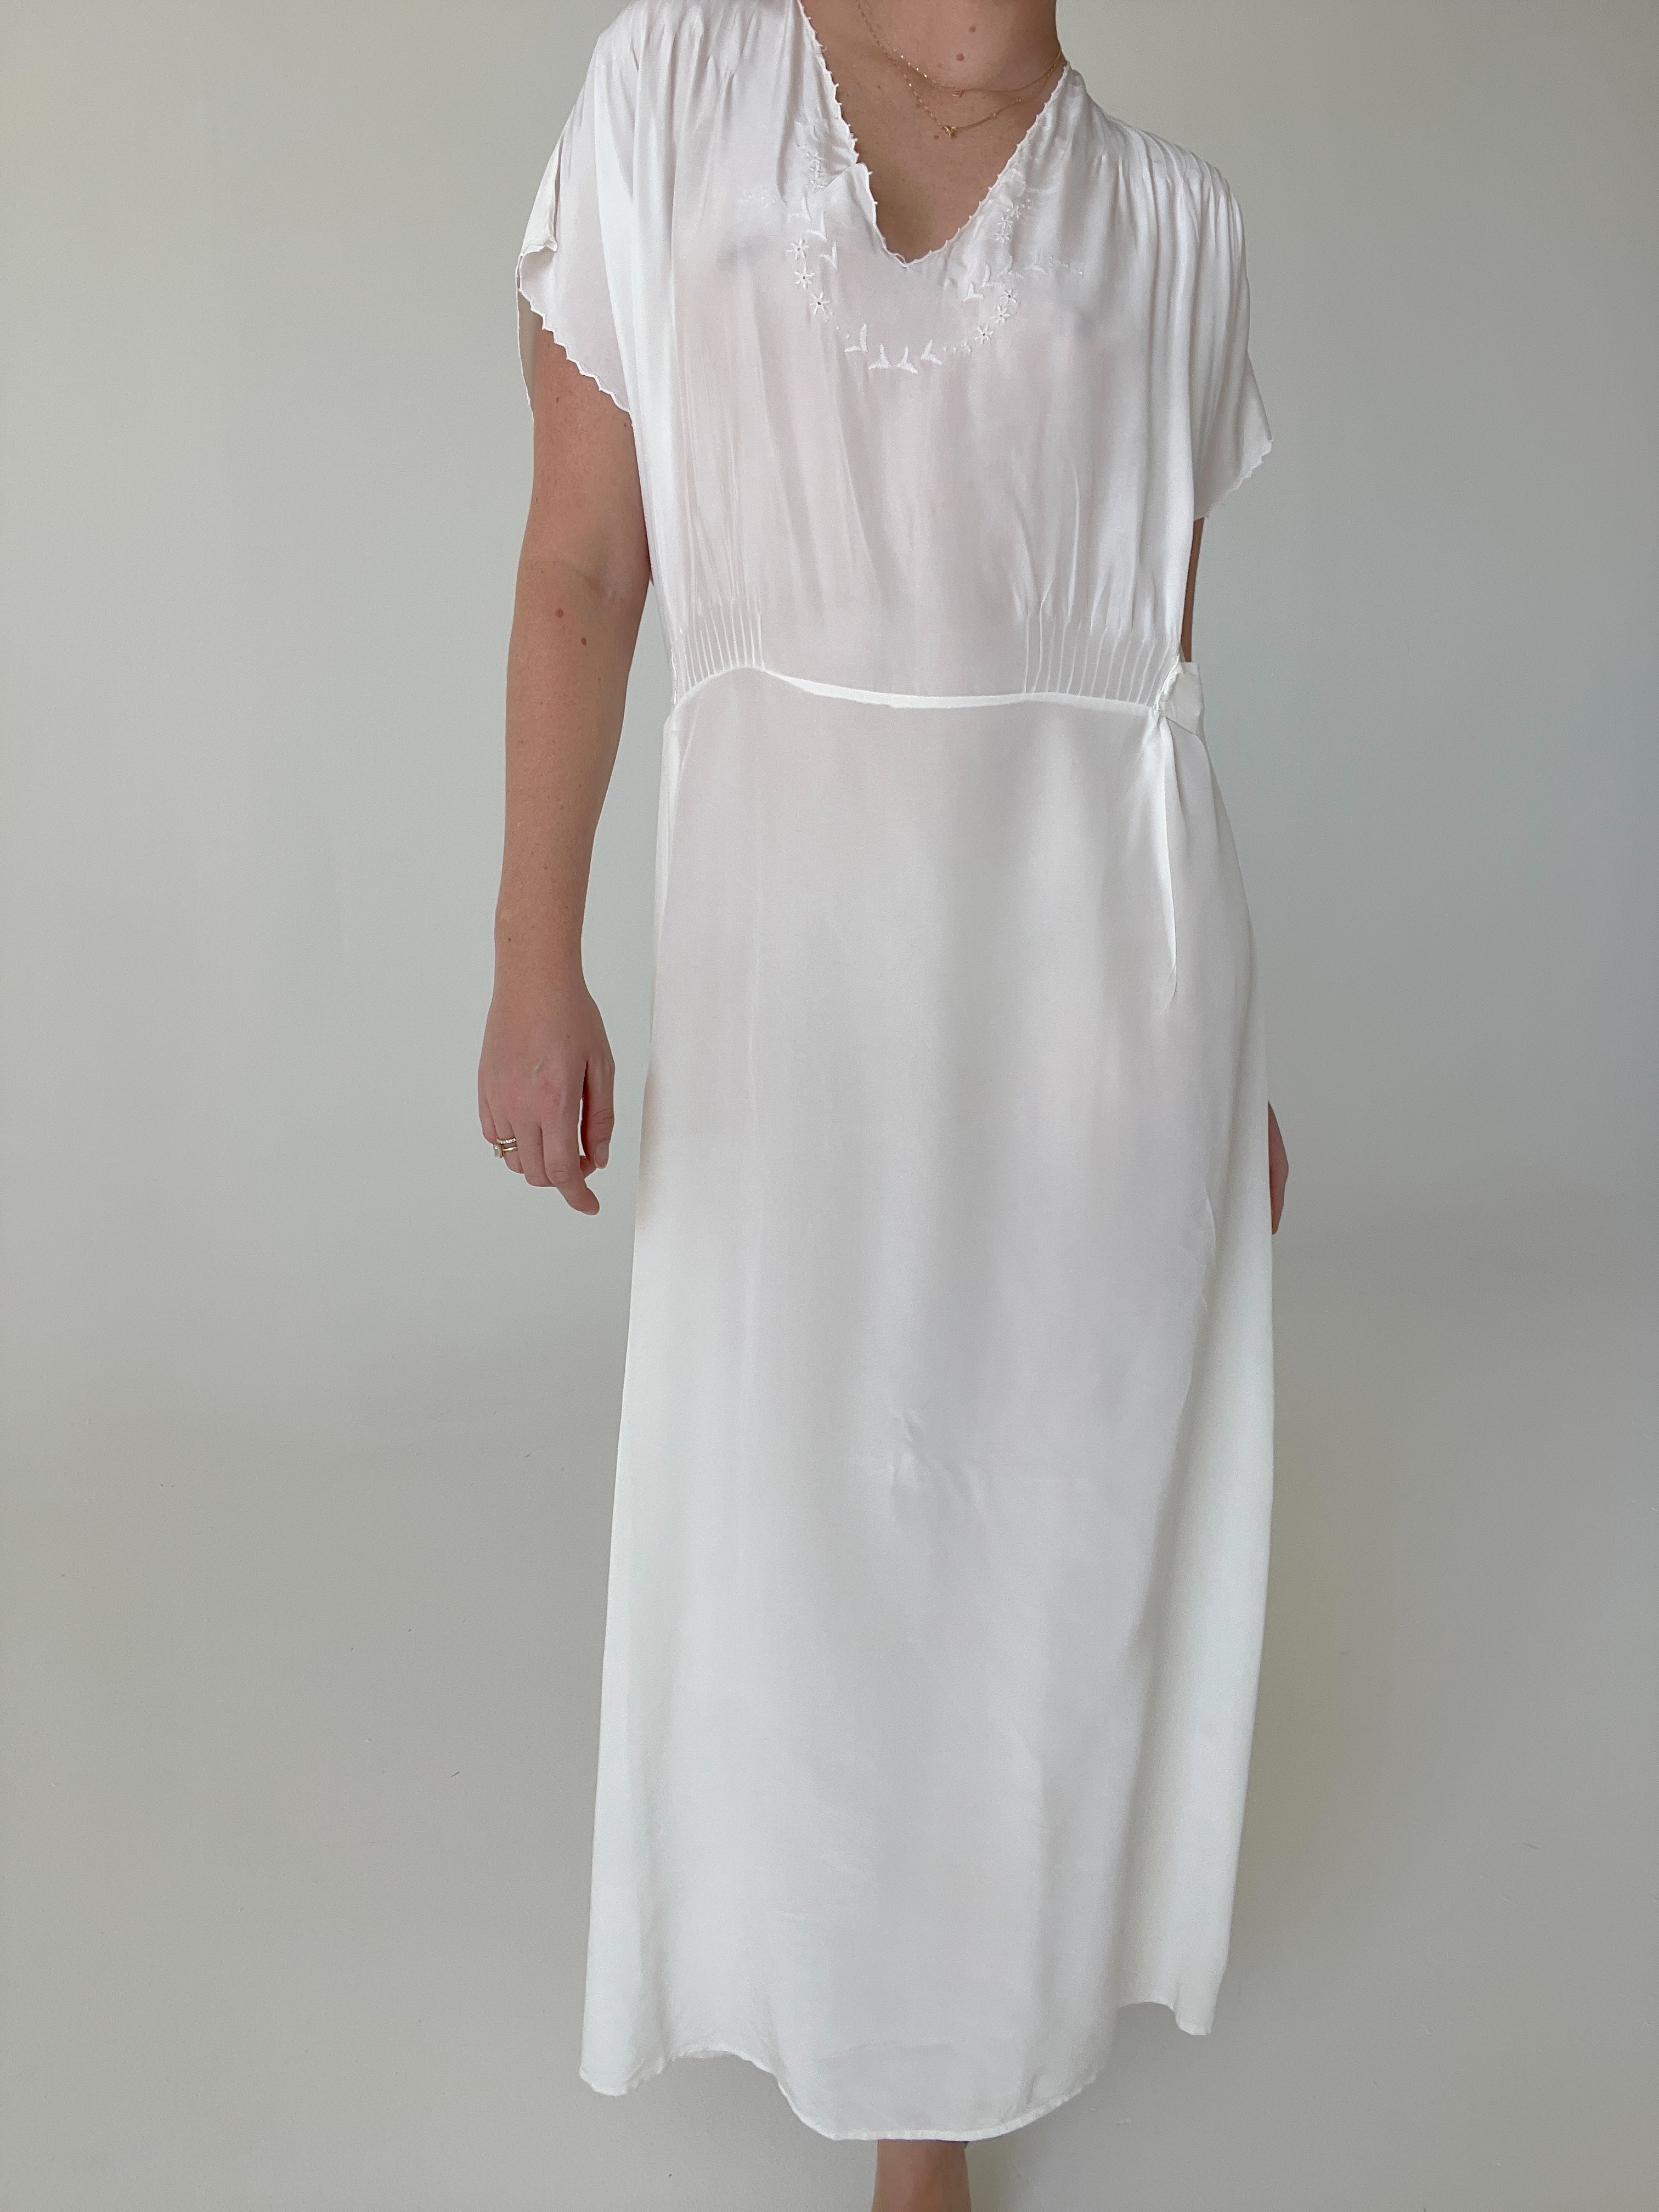 1930's Bridal White Dress